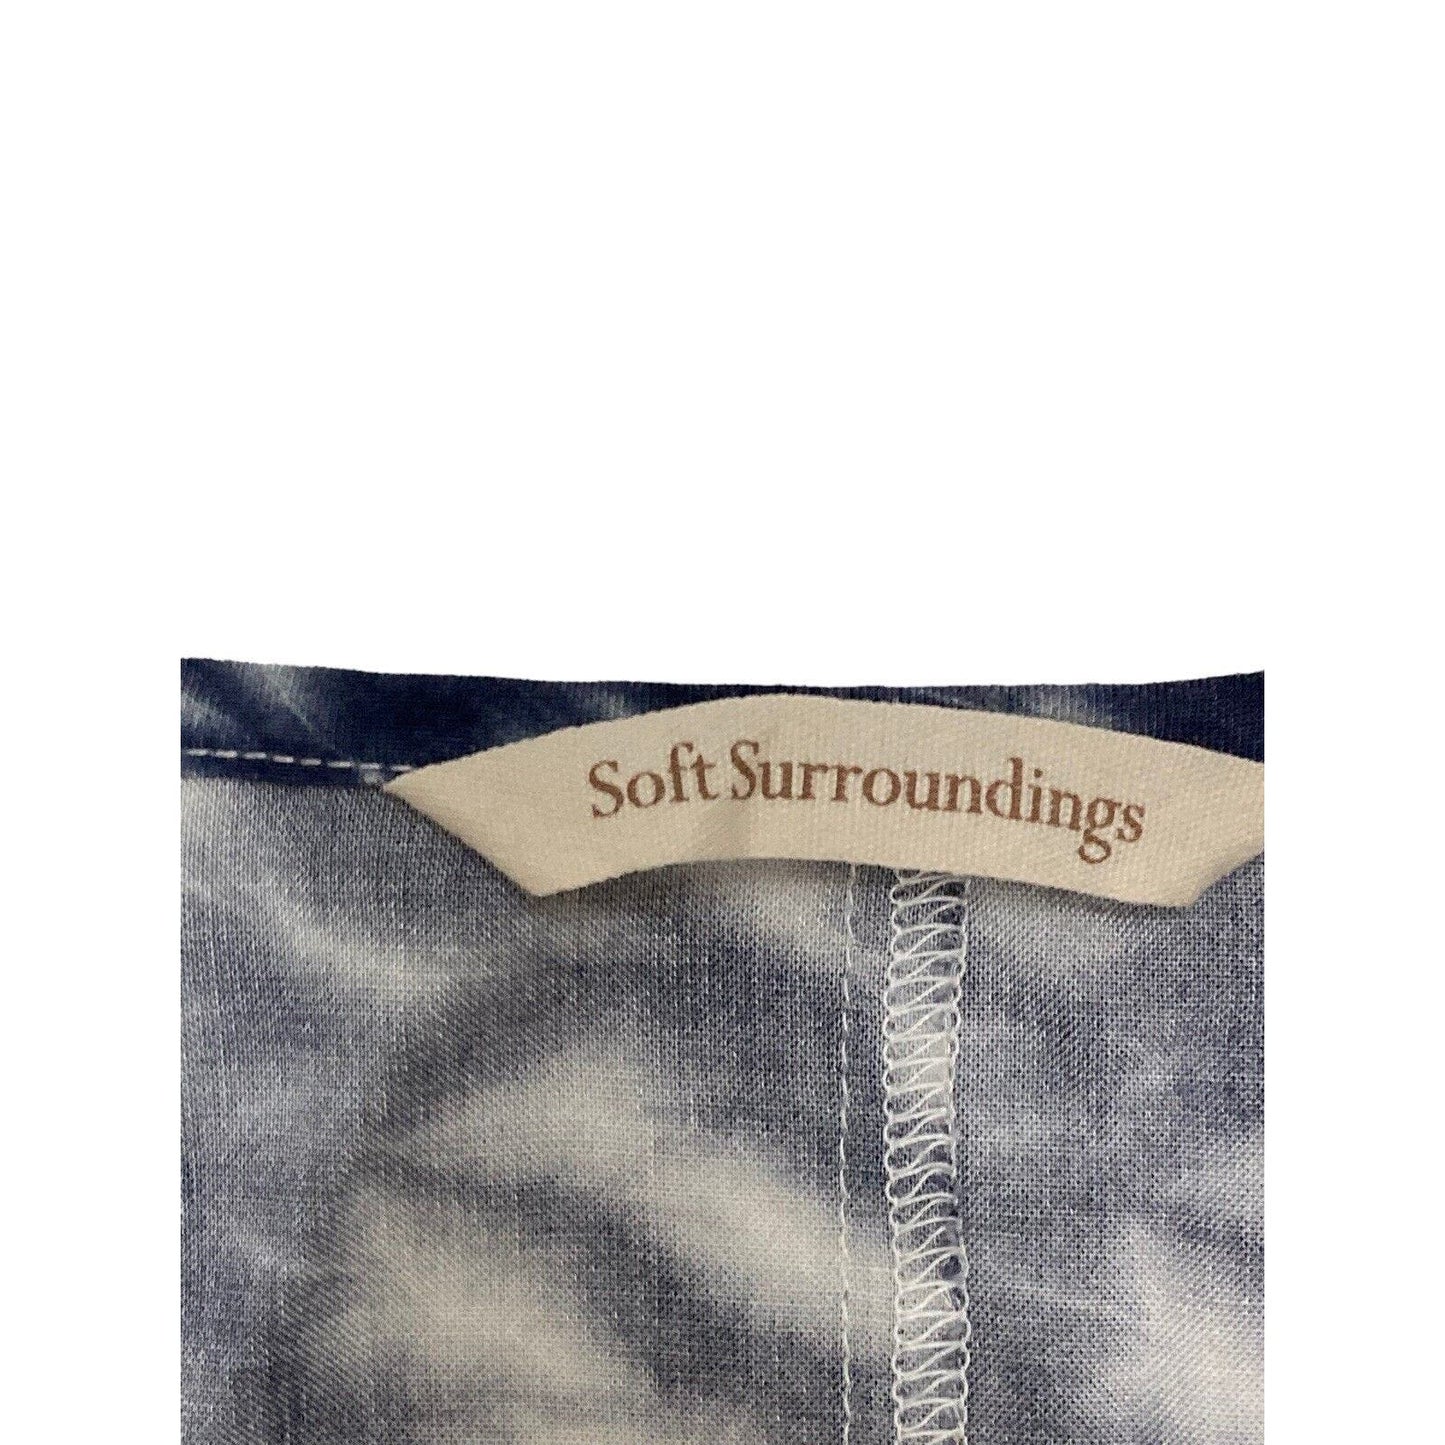 Soft Surroundings Reflections Tunic Blue Shibori Tye Dye Pockets Viscose Medium